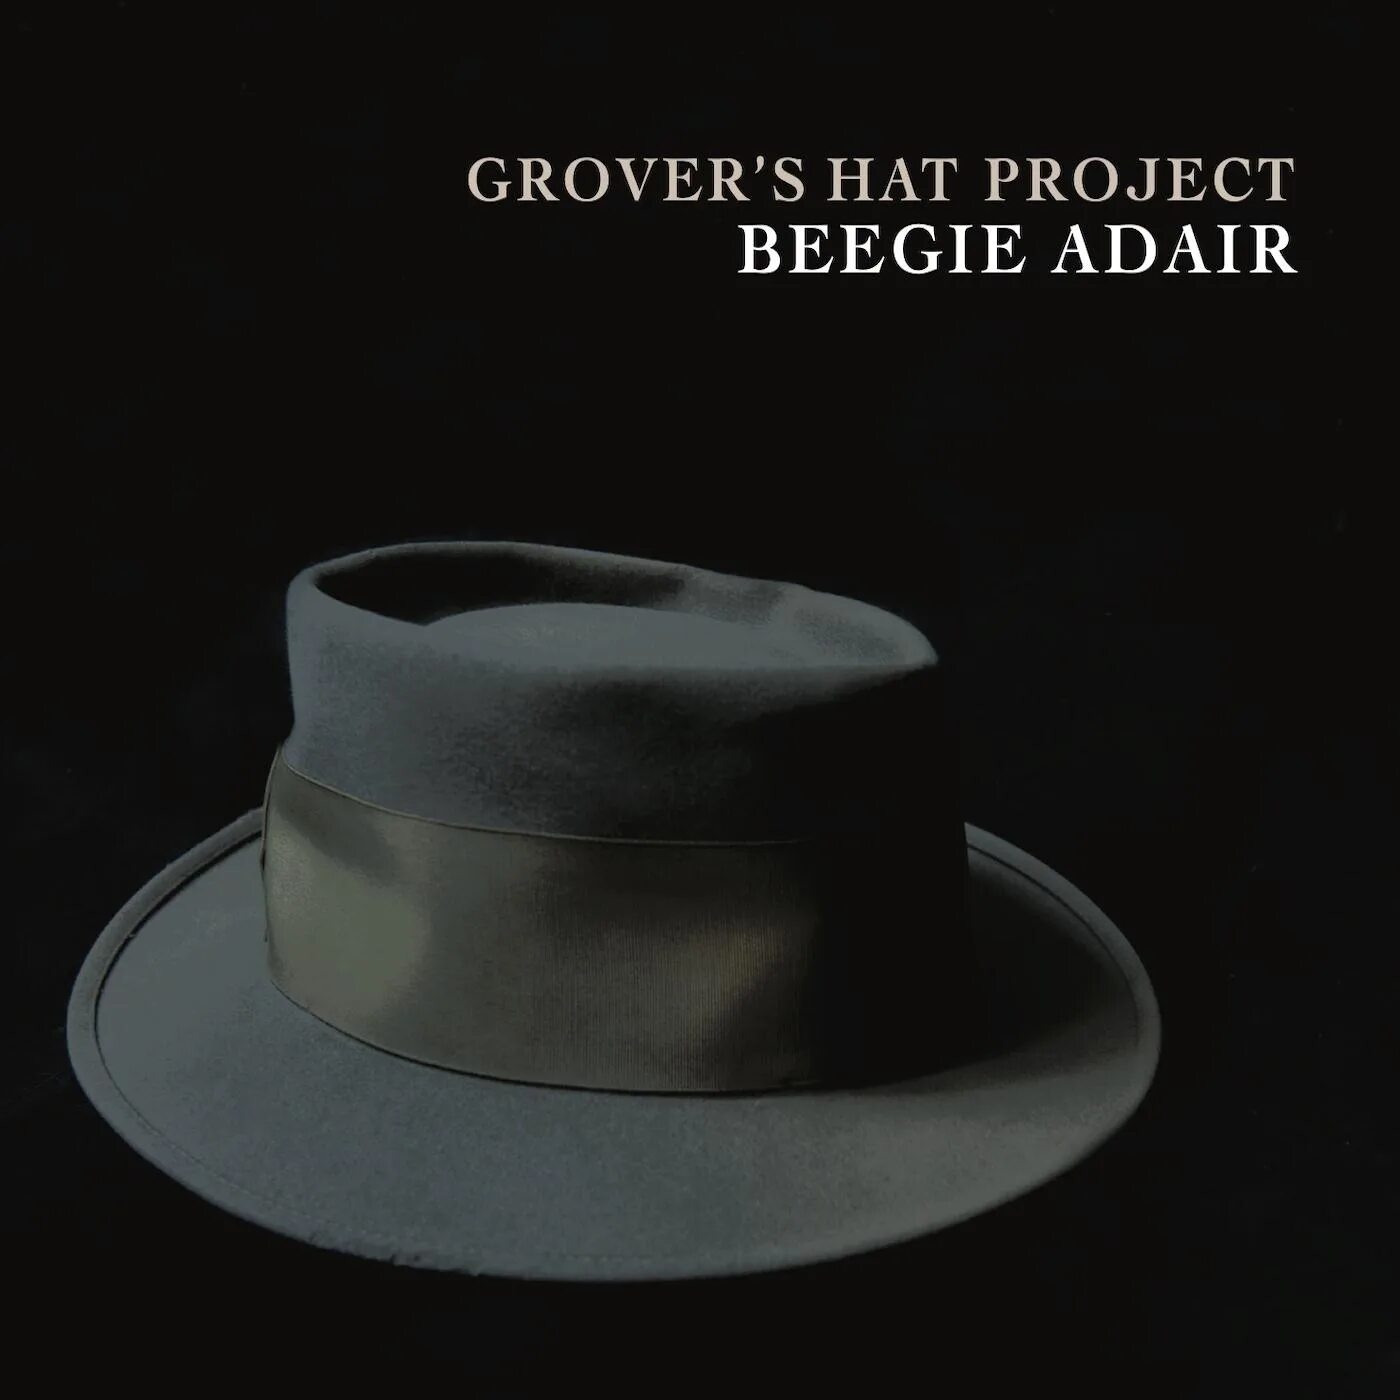 Нарезки для шляпы читающей мысли. Beegie Adair. Beegie Adair - Grover's hat Project (2019) - картинки. Beegie Adair - by request. Beegie Adair i Love being.